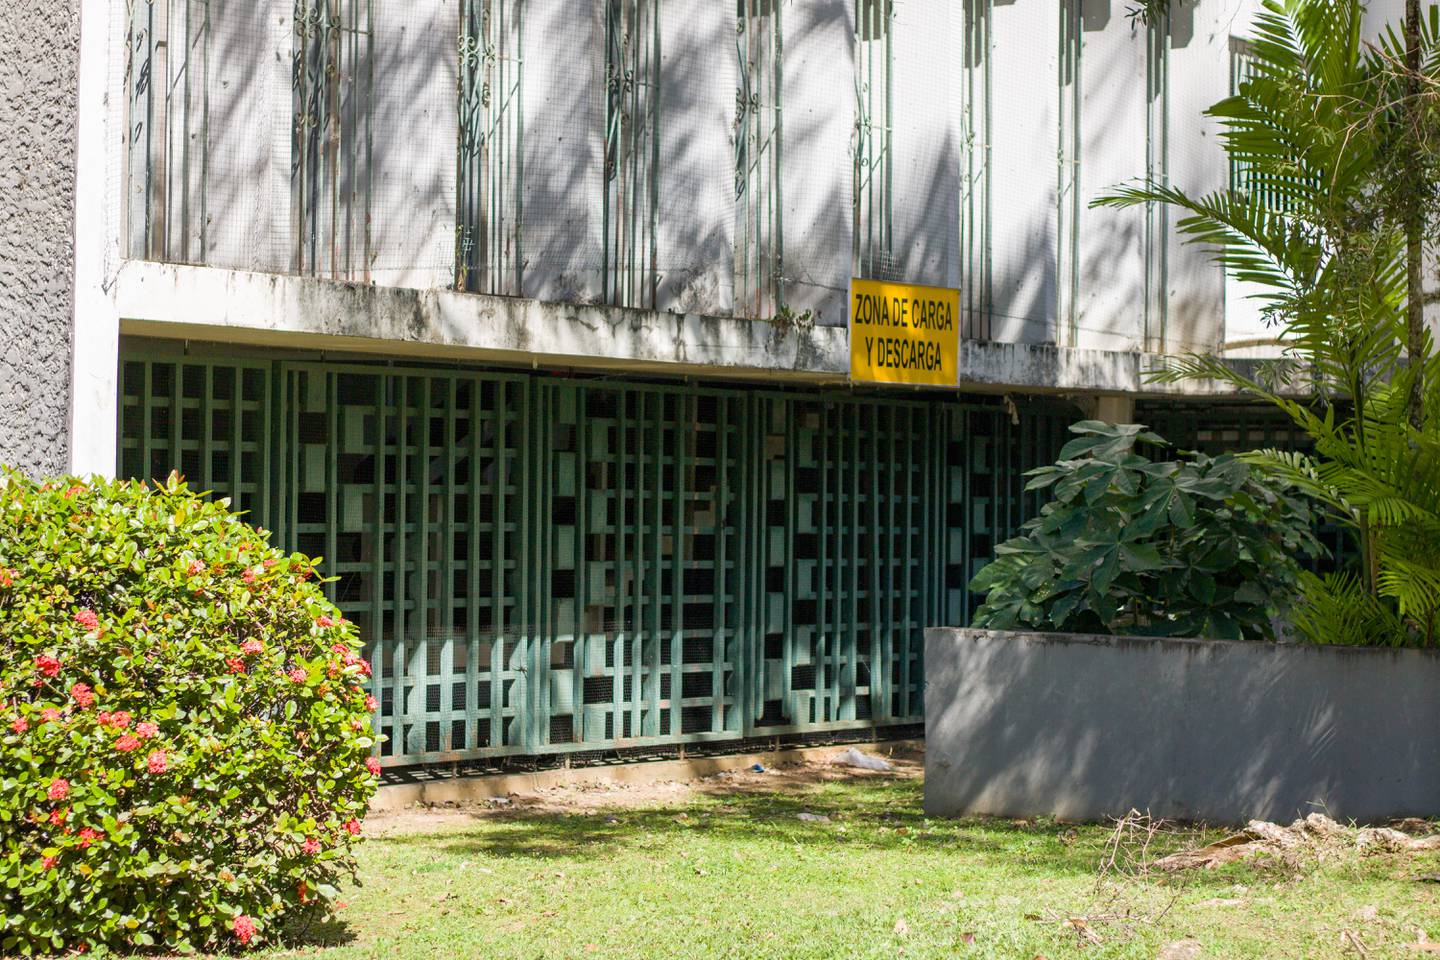 Unos portones verdes sellan el primer piso de ResiCampus bajo un letrero amarillo que lee "Zona de carga y descarga".